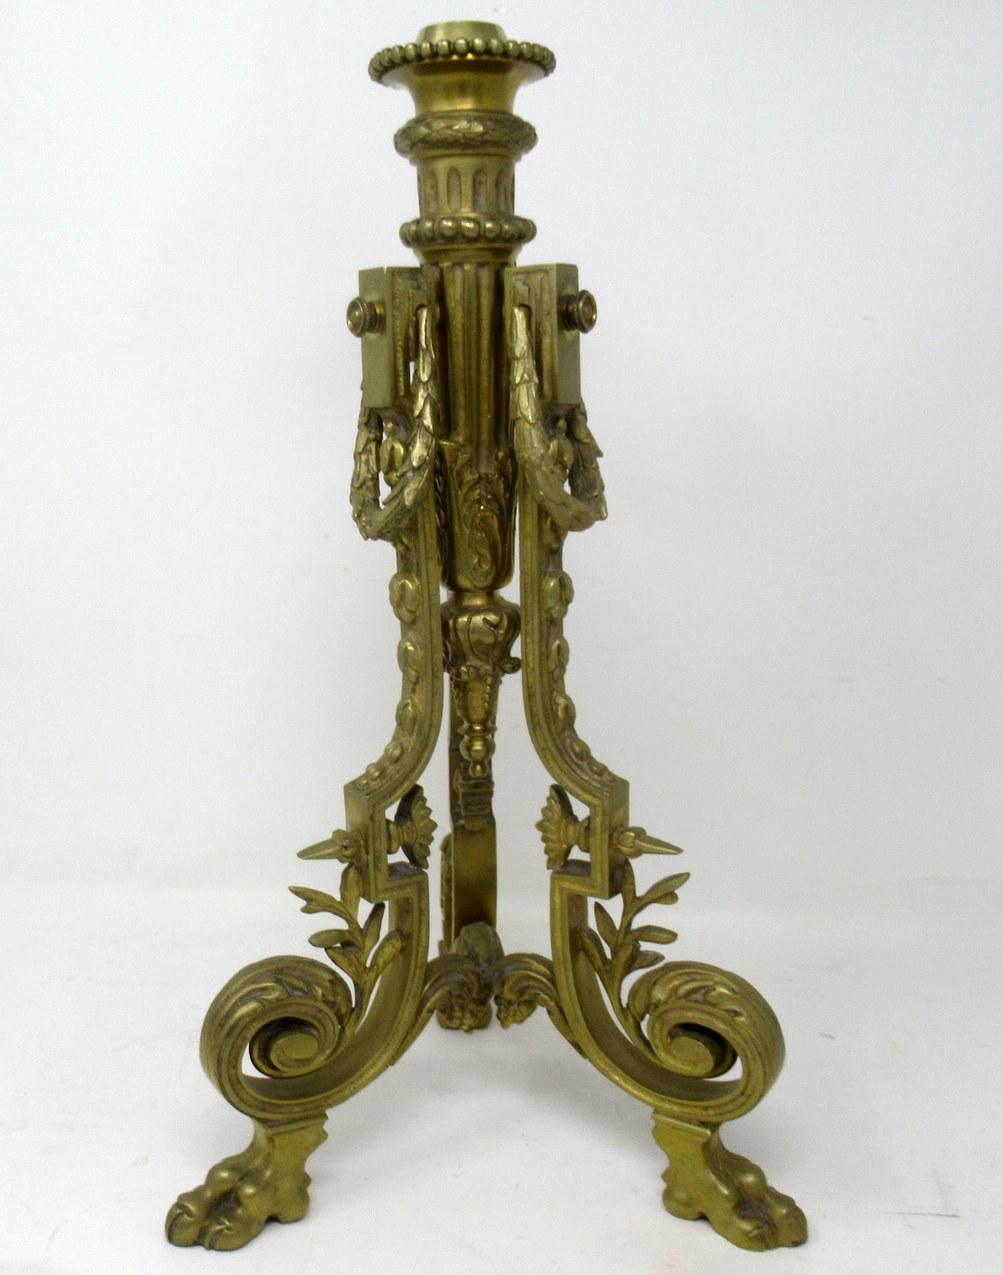 Une exquise lampe à huile ou à fluide de style Renaissance en bronze doré de qualité exceptionnelle et d'origine française, du dernier quart du dix-neuvième siècle. 

Le réservoir d'origine en verre circulaire avec un motif en forme de fraise se